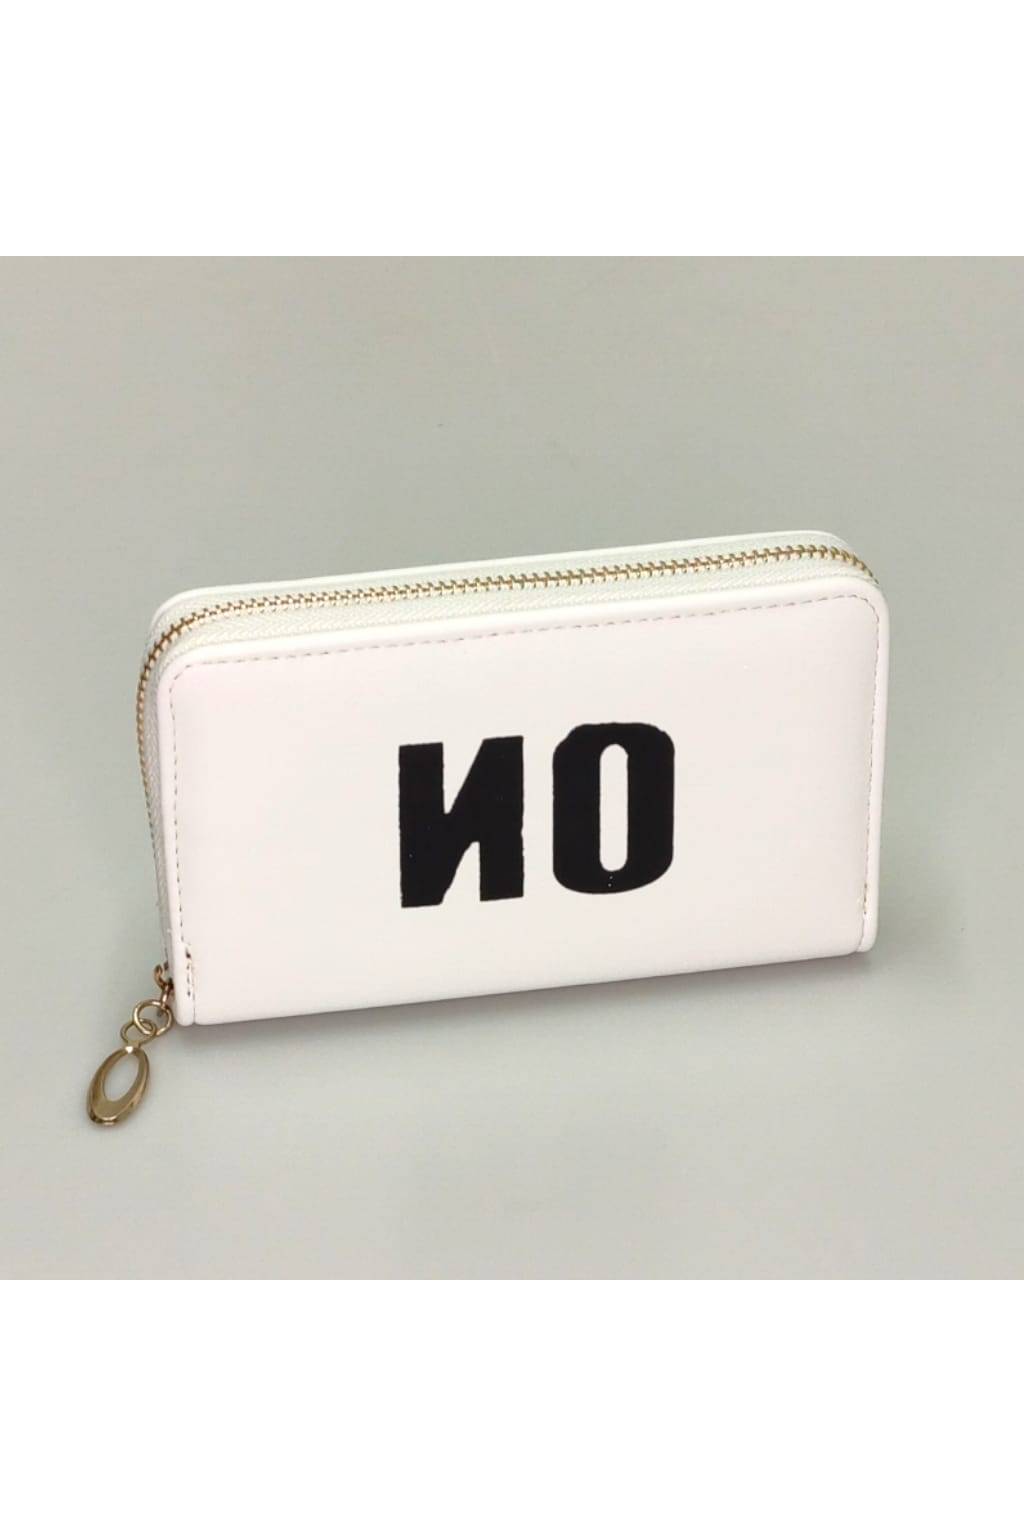 Dámska peňaženka D 7258 M biela www.kabelky vypredaj (3)